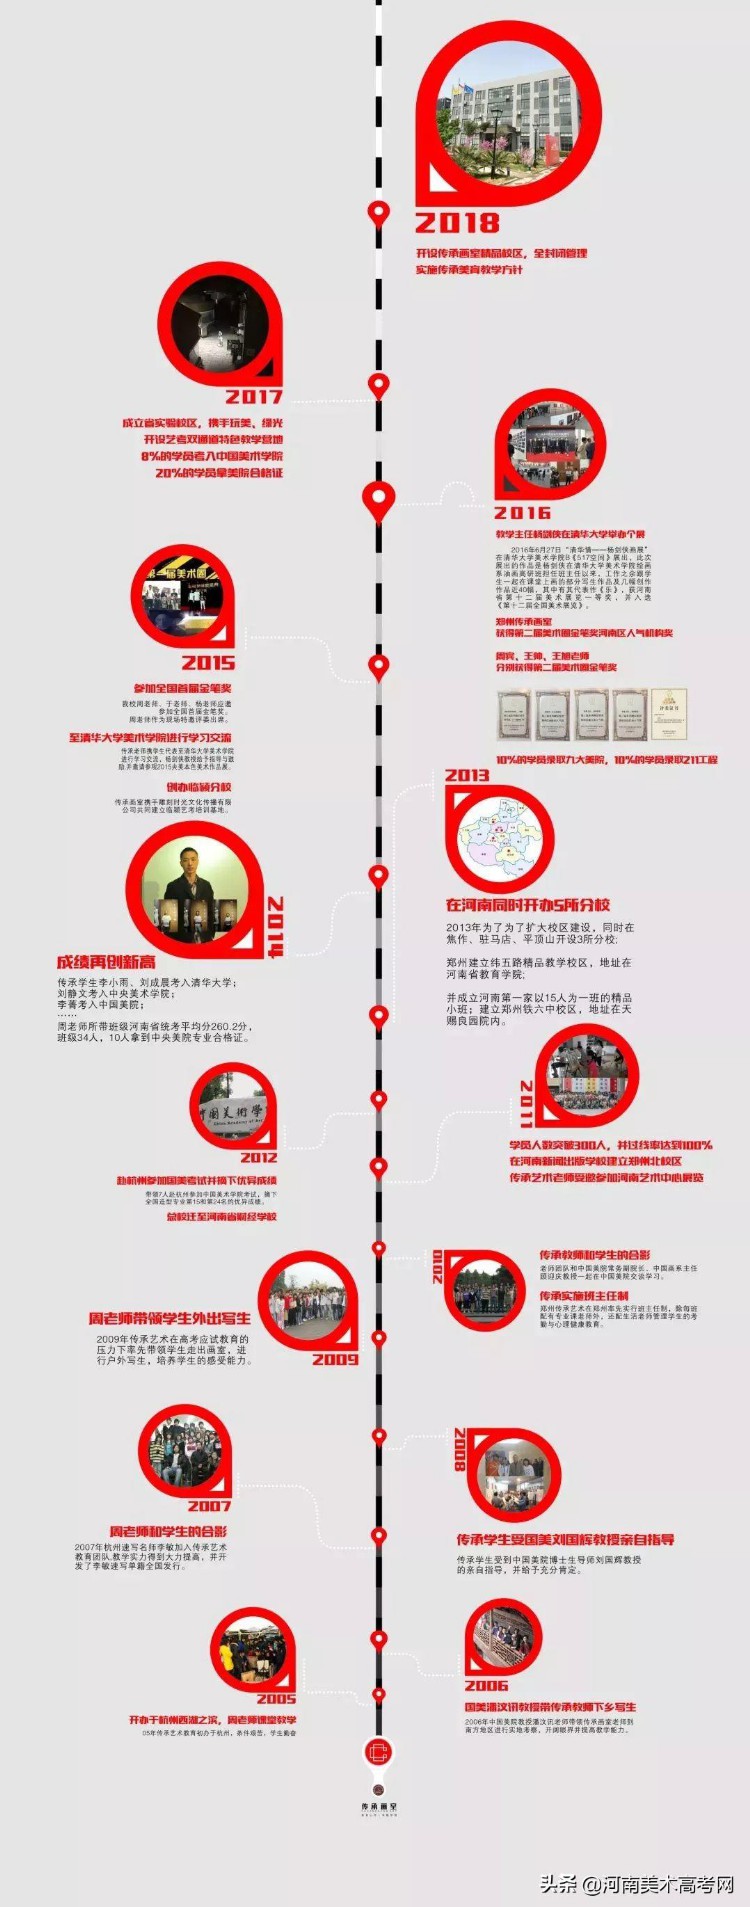 郑州传承画室(简介篇)—— 2019河南优秀美术培训机构巡礼